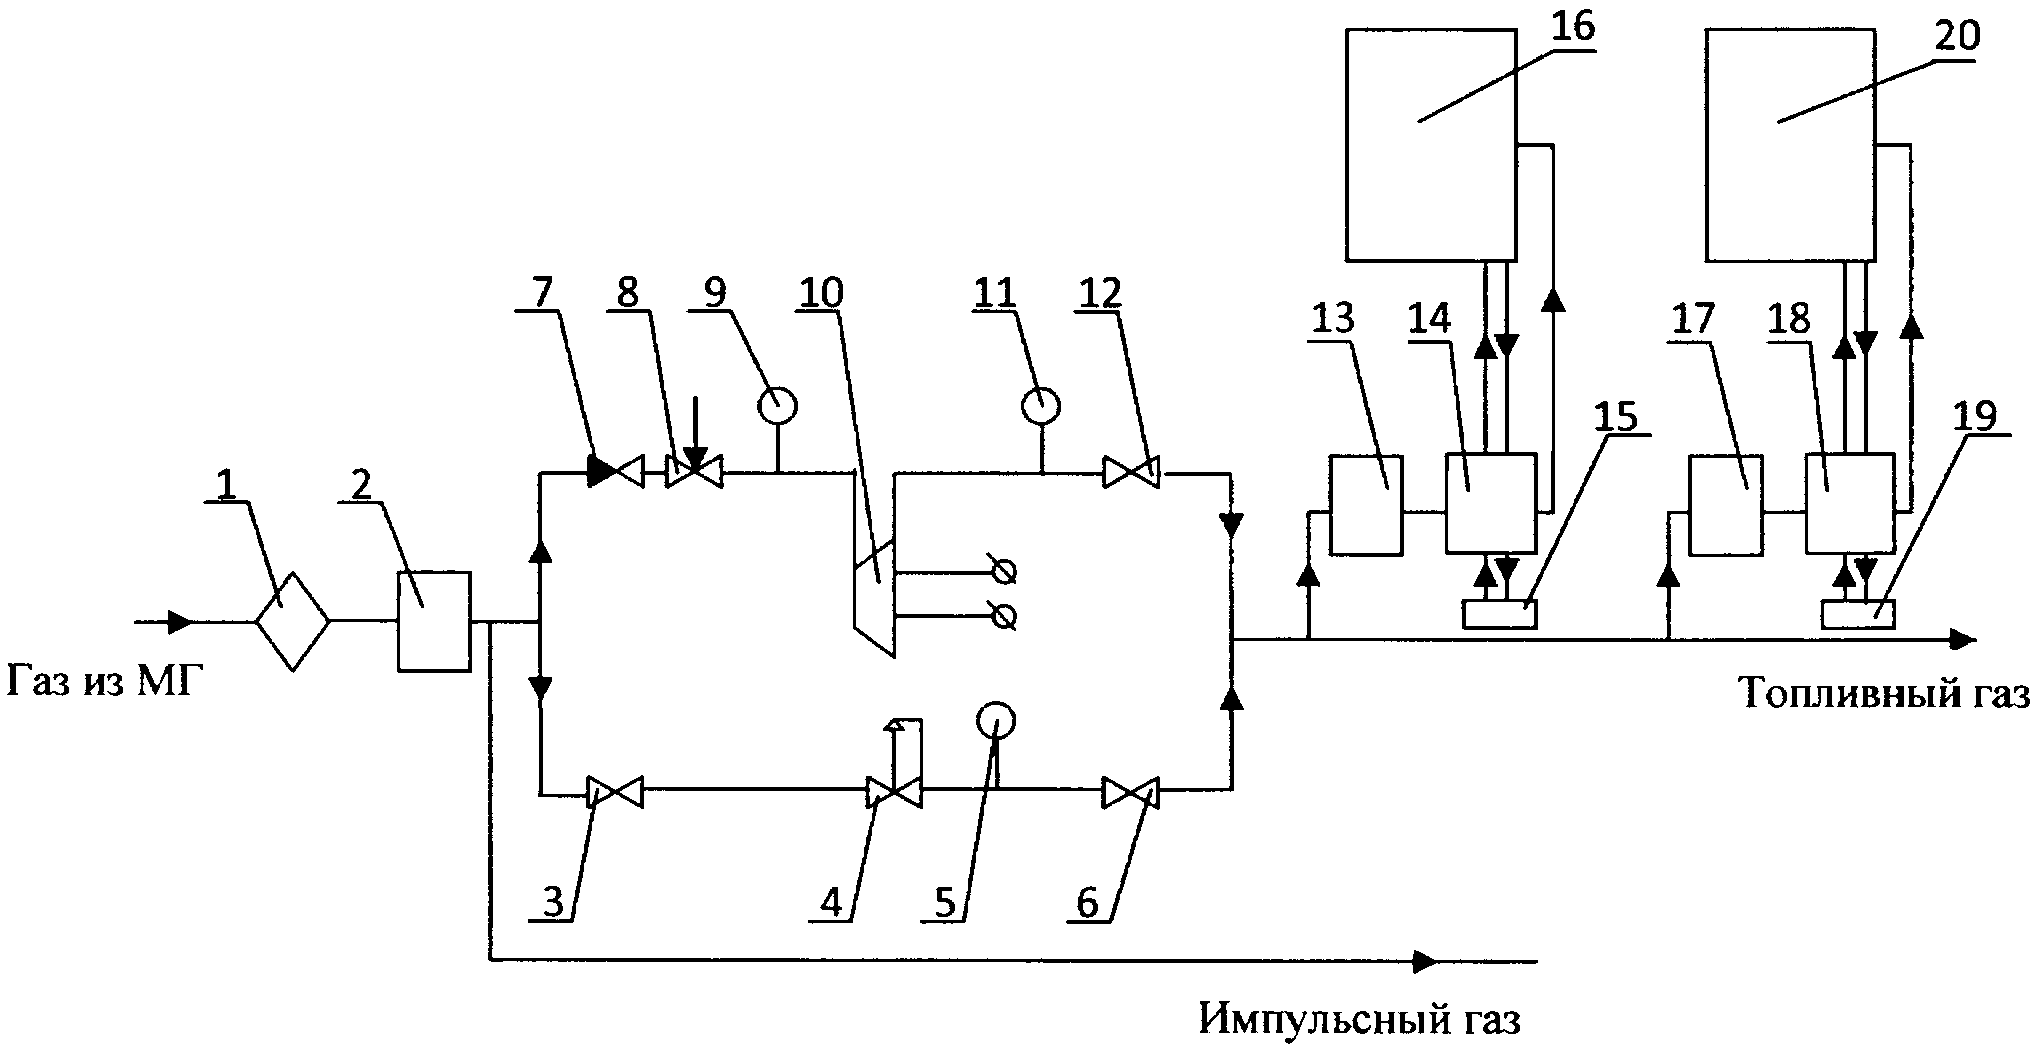 Интегрированная система топливопитания и маслообеспечения газоперекачивающего агрегата компрессорной станции